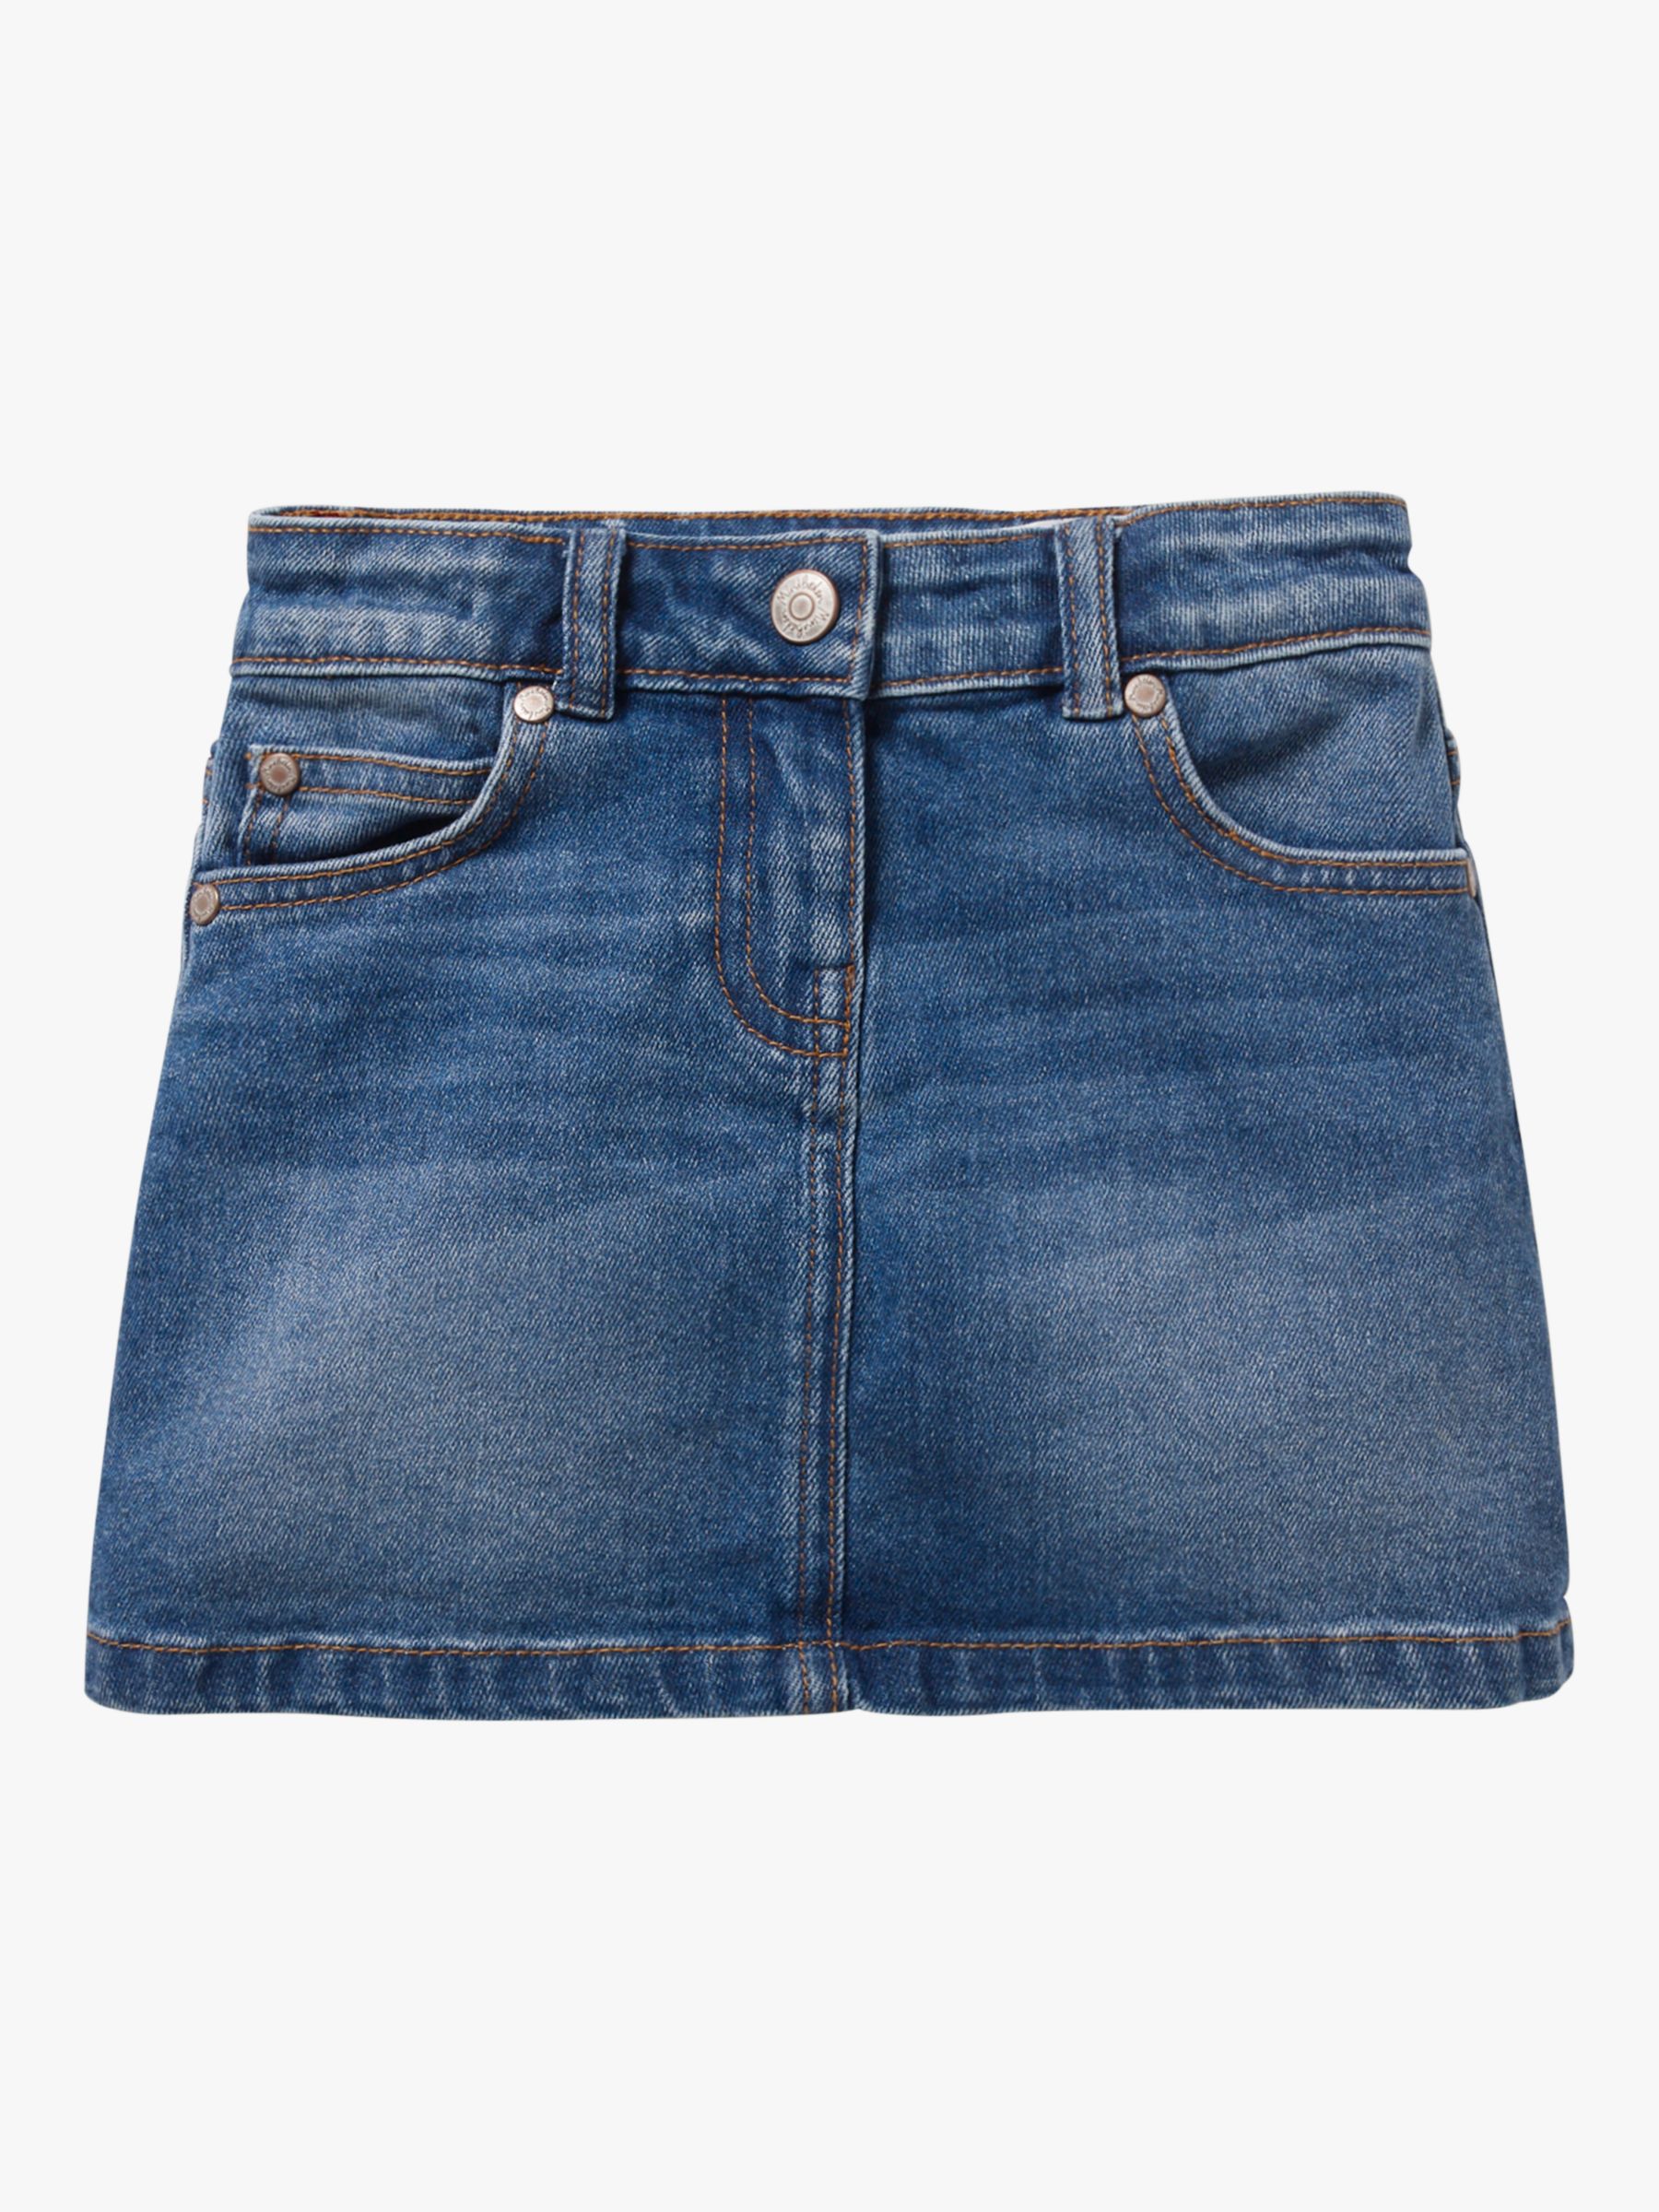 Mini Boden Girls' Five Pocket Denim Skirt, Blue at John Lewis & Partners